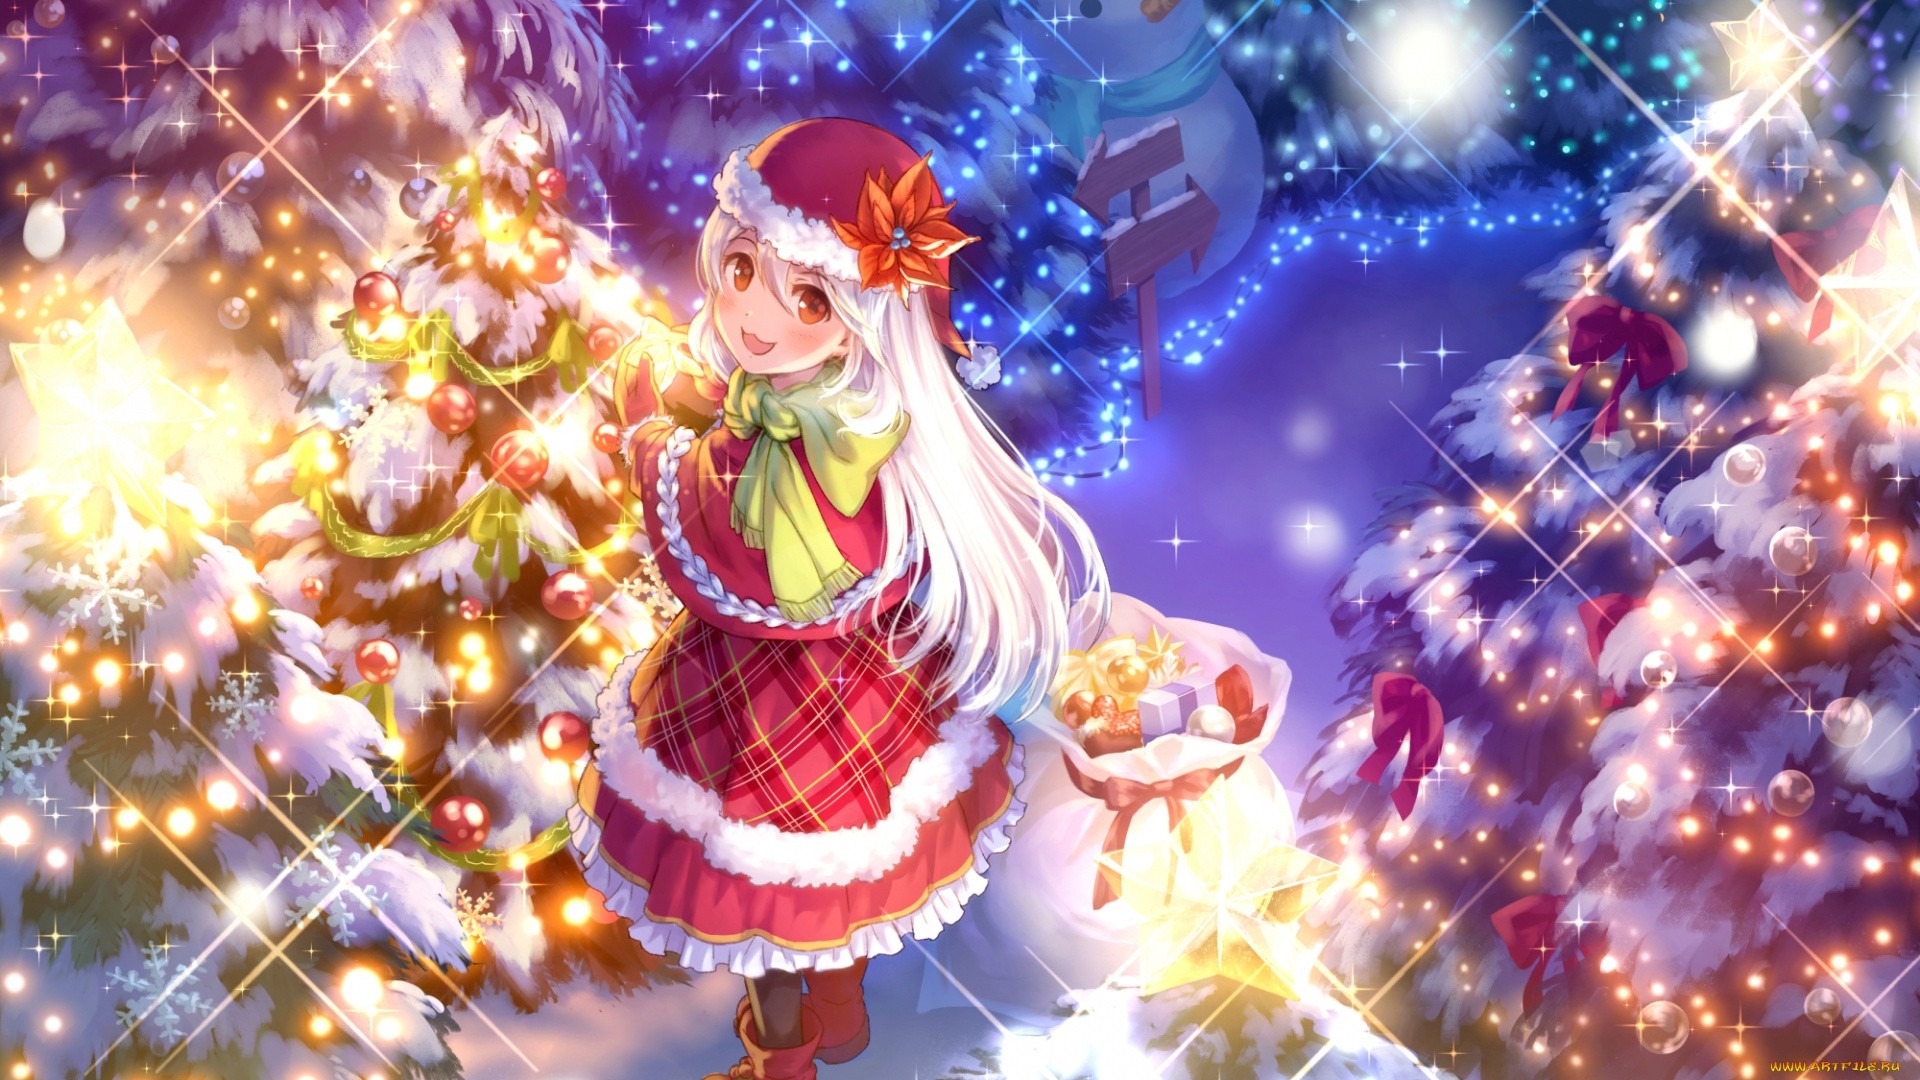 20+] Anime Christmas PC Wallpapers - WallpaperSafari